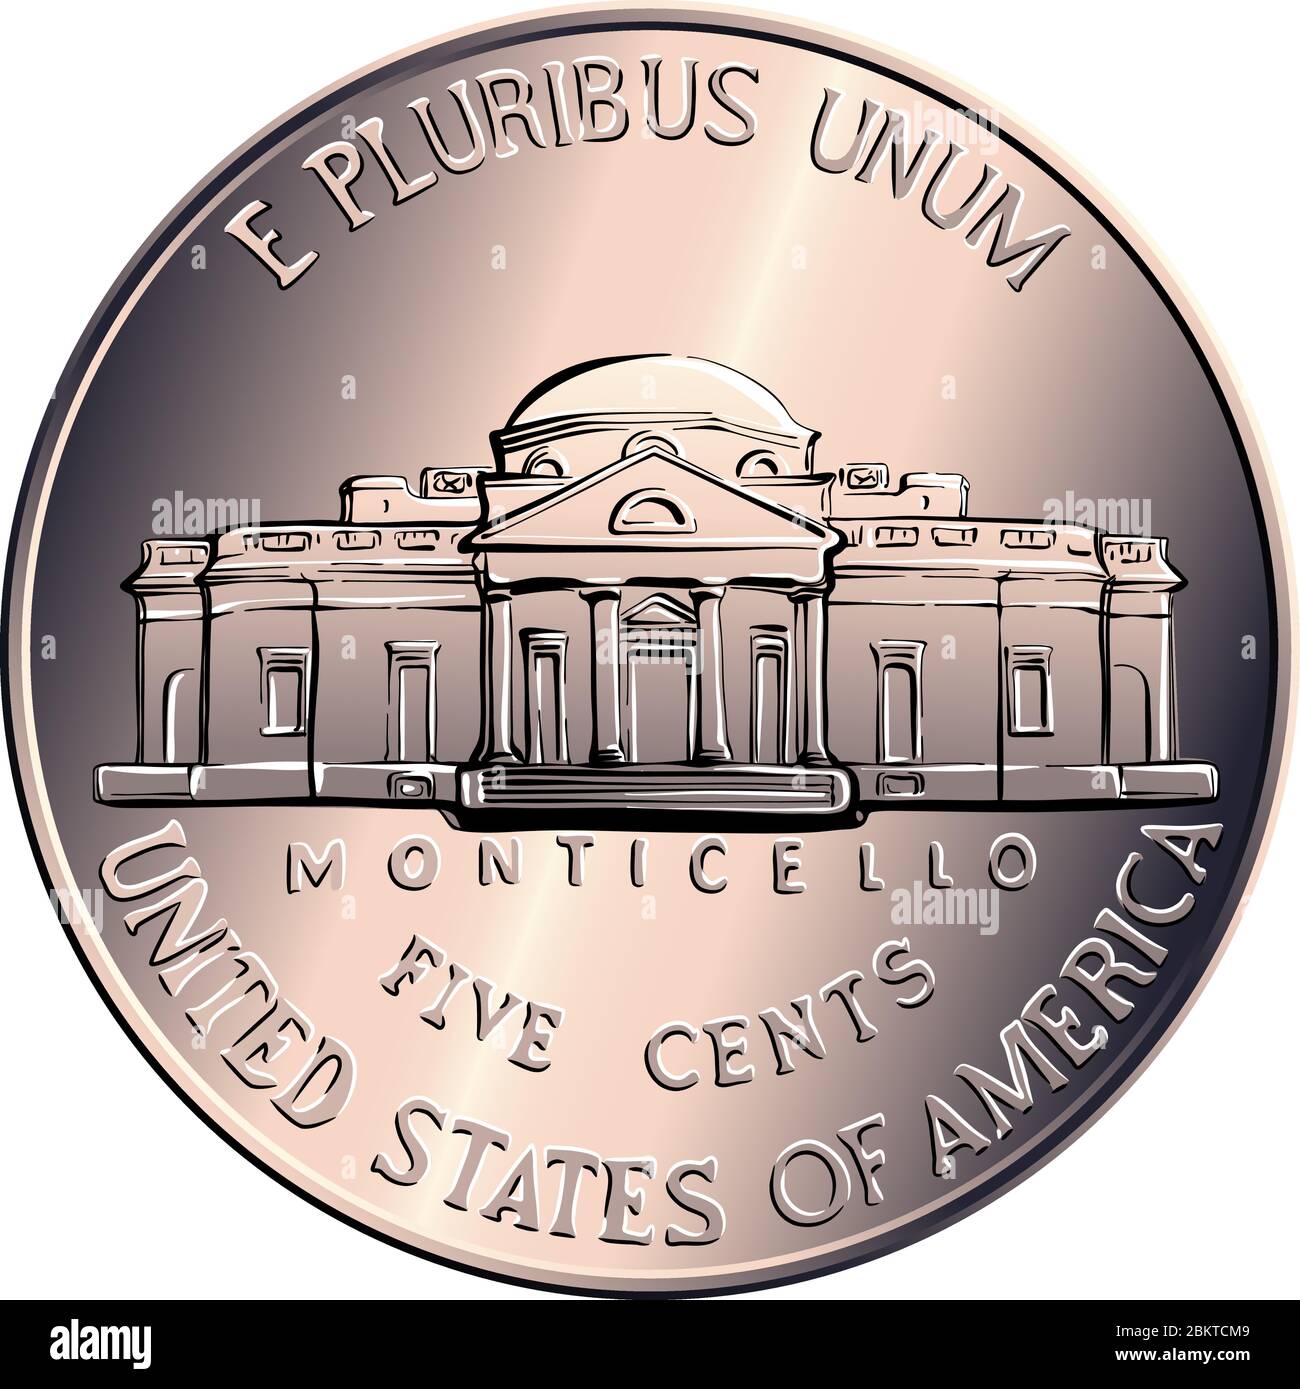 Inverse de Jefferson nickel, argent américain, USA cinq cents pièce, le troisième président américain Thomas Jefferson sur l'inverse et sa maison Monticello sur l'inverse Illustration de Vecteur